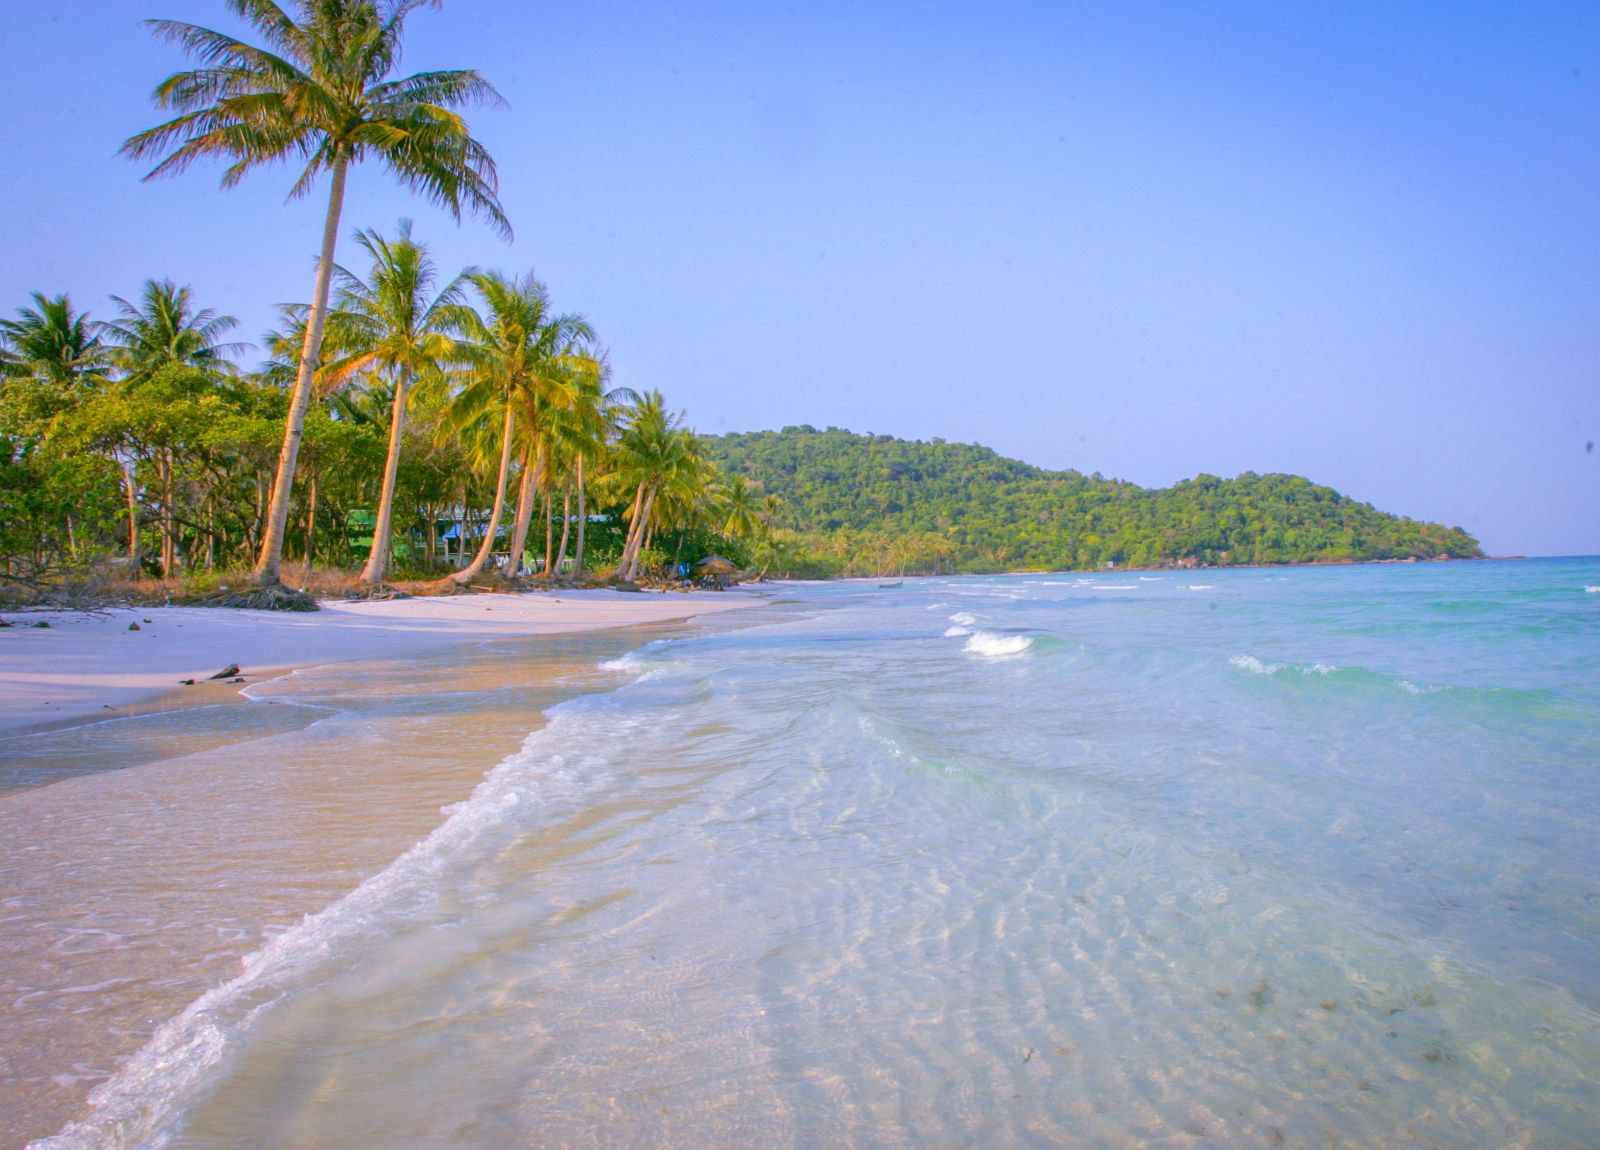  Ảnh chụp bãi Sao, bãi tắm nổi tiếng ở phía Nam đảo một buổi sáng vắng vẻ 10 năm trước, lấp ló bên làn nước biển trong vắt là bạt ngàn dừa và mênh mông nắng, gió.